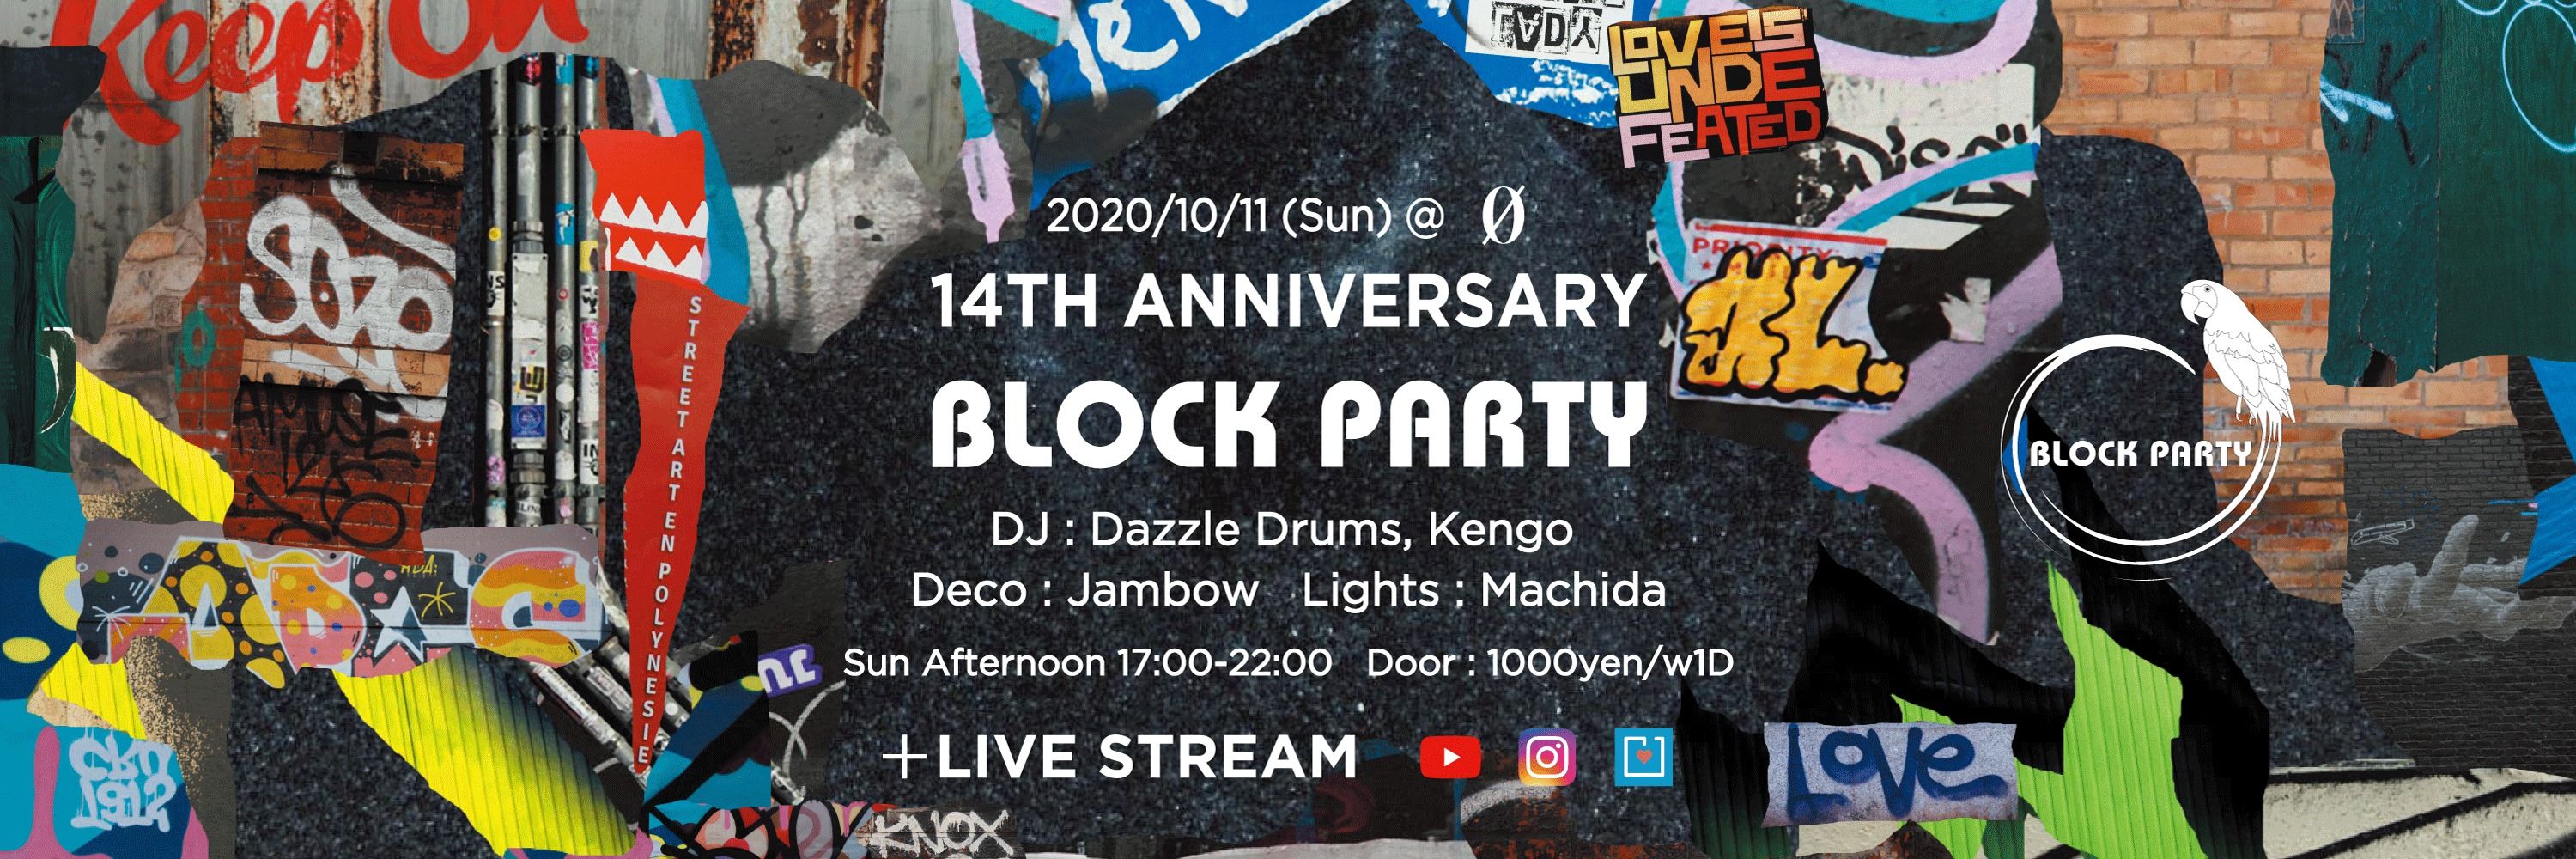 Block Party "14th Anniversary" + Live Stream @ 0 Zero